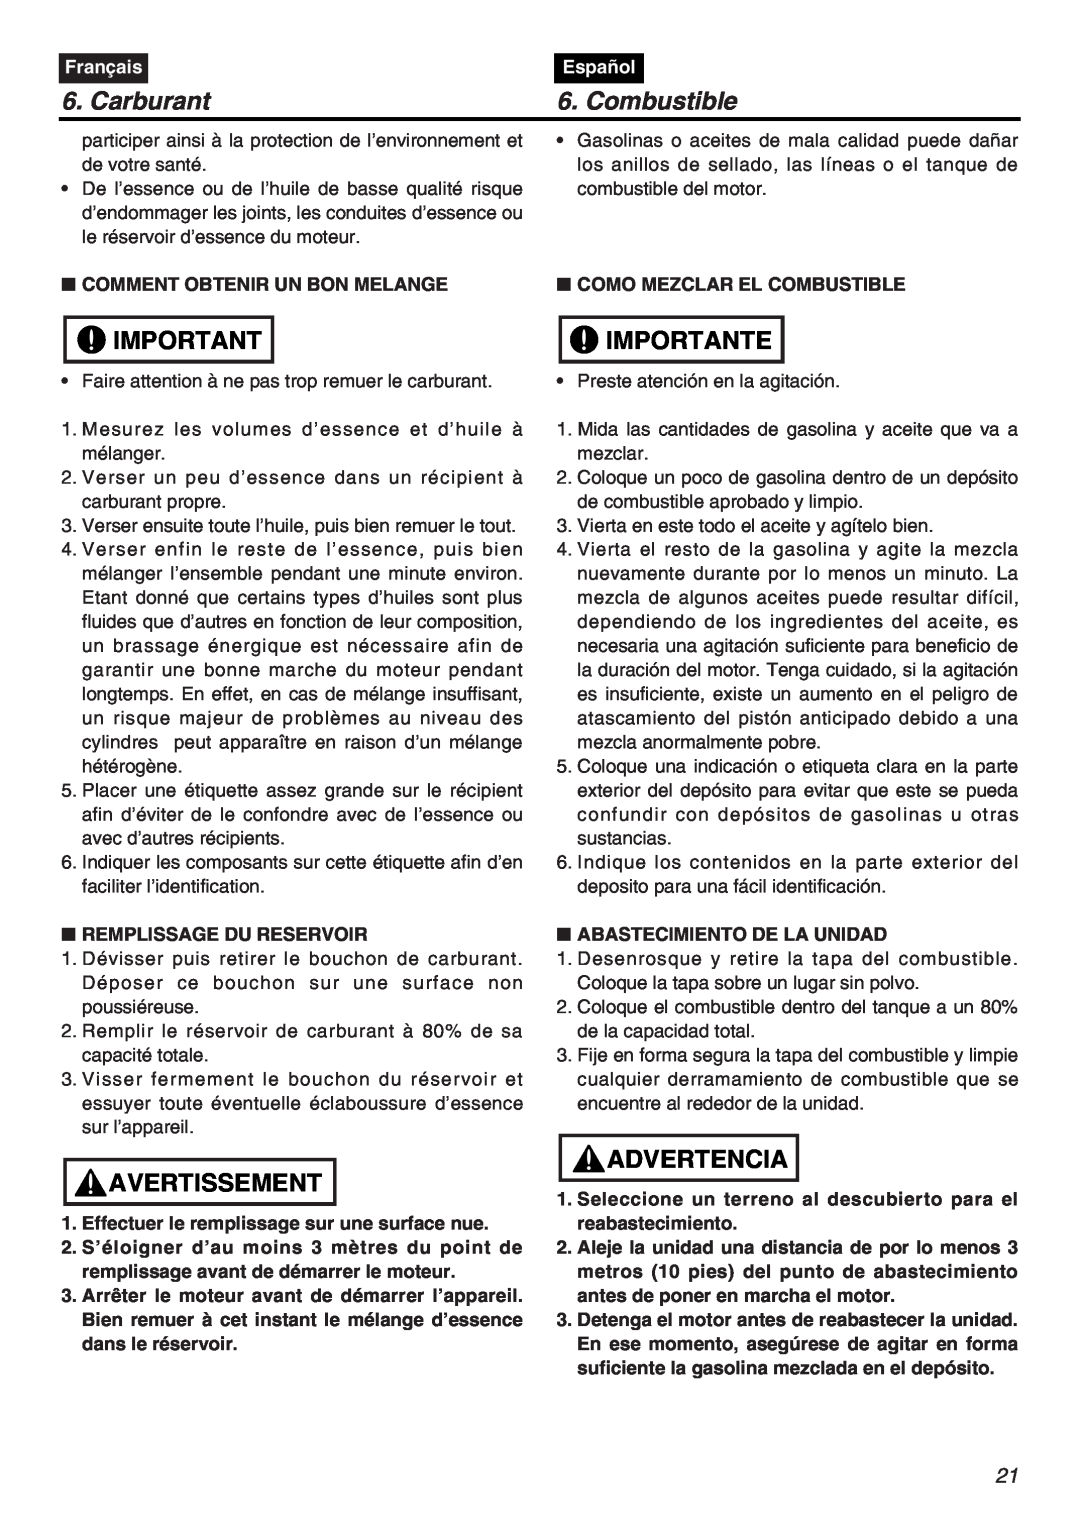 RedMax HTZ2401-CA, HTZ2401L-CA manual Carburant, Combustible, Importante, Avertissement, Advertencia, Français, Español 